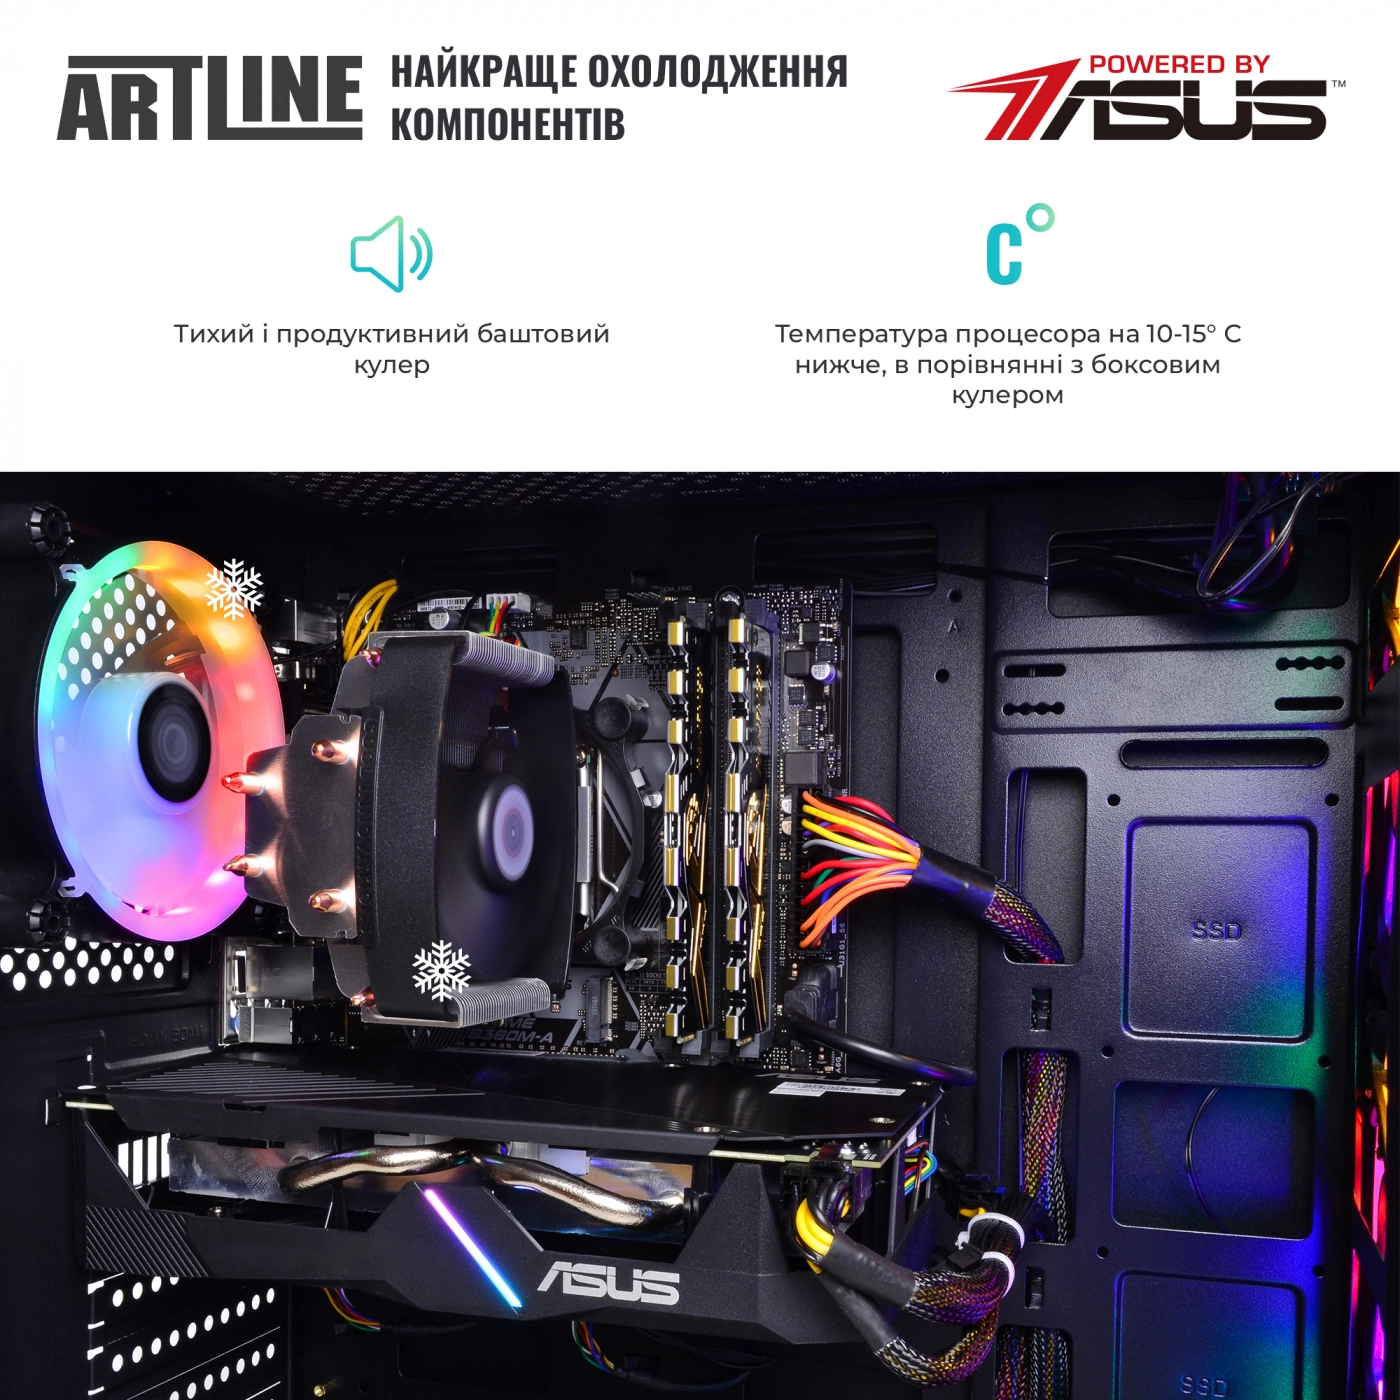 Купить Компьютер ARTLINE Gaming X48v43 - фото 6